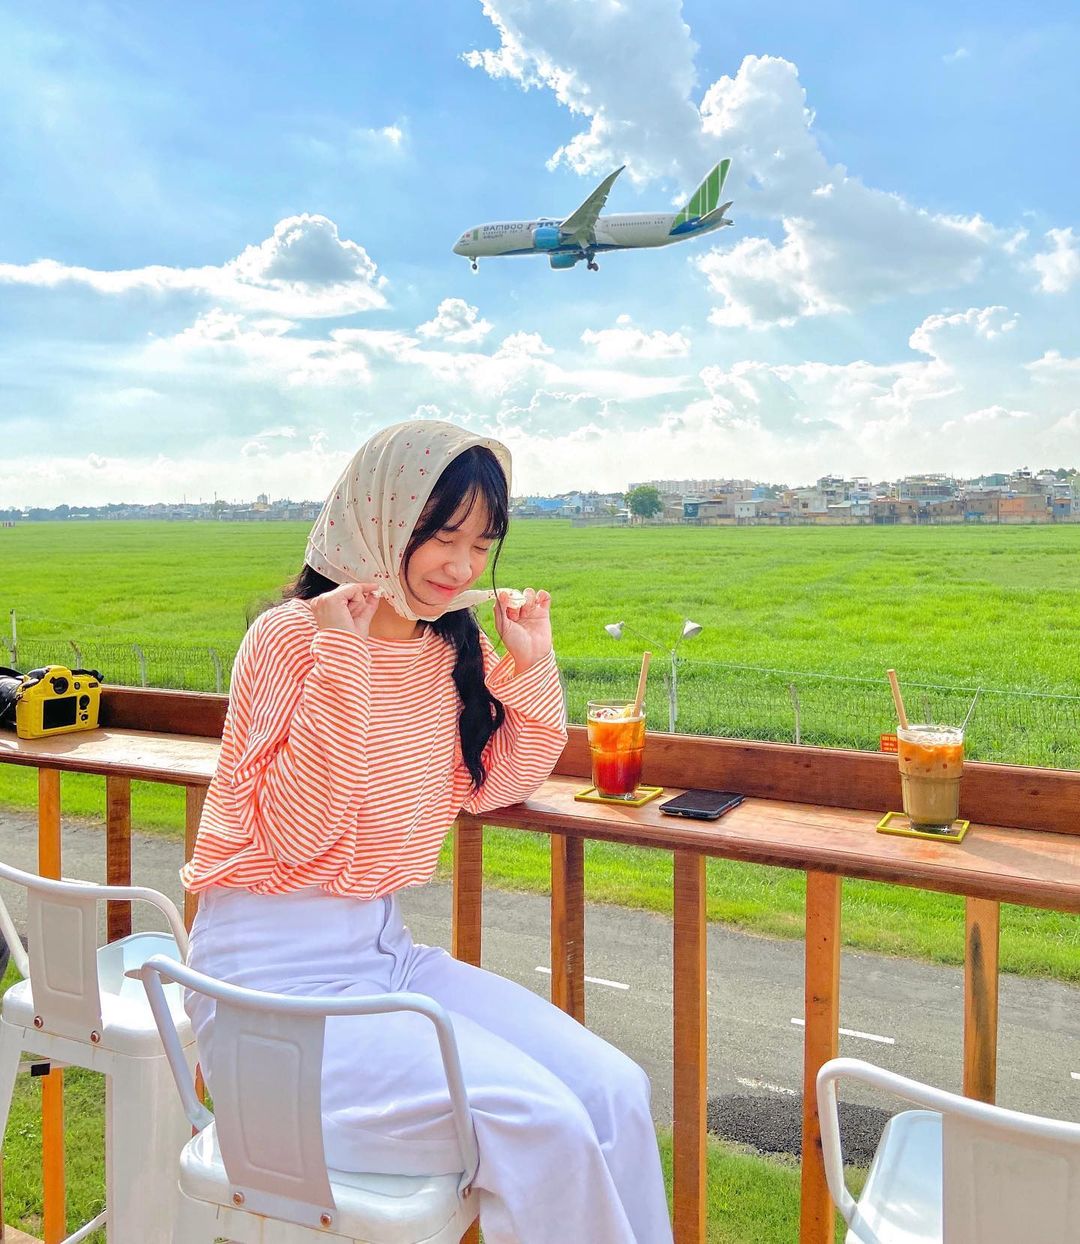 Lưu ngay các quán cà phê ngắm máy bay ở Sài Gòn cực chill - ChuduInfo